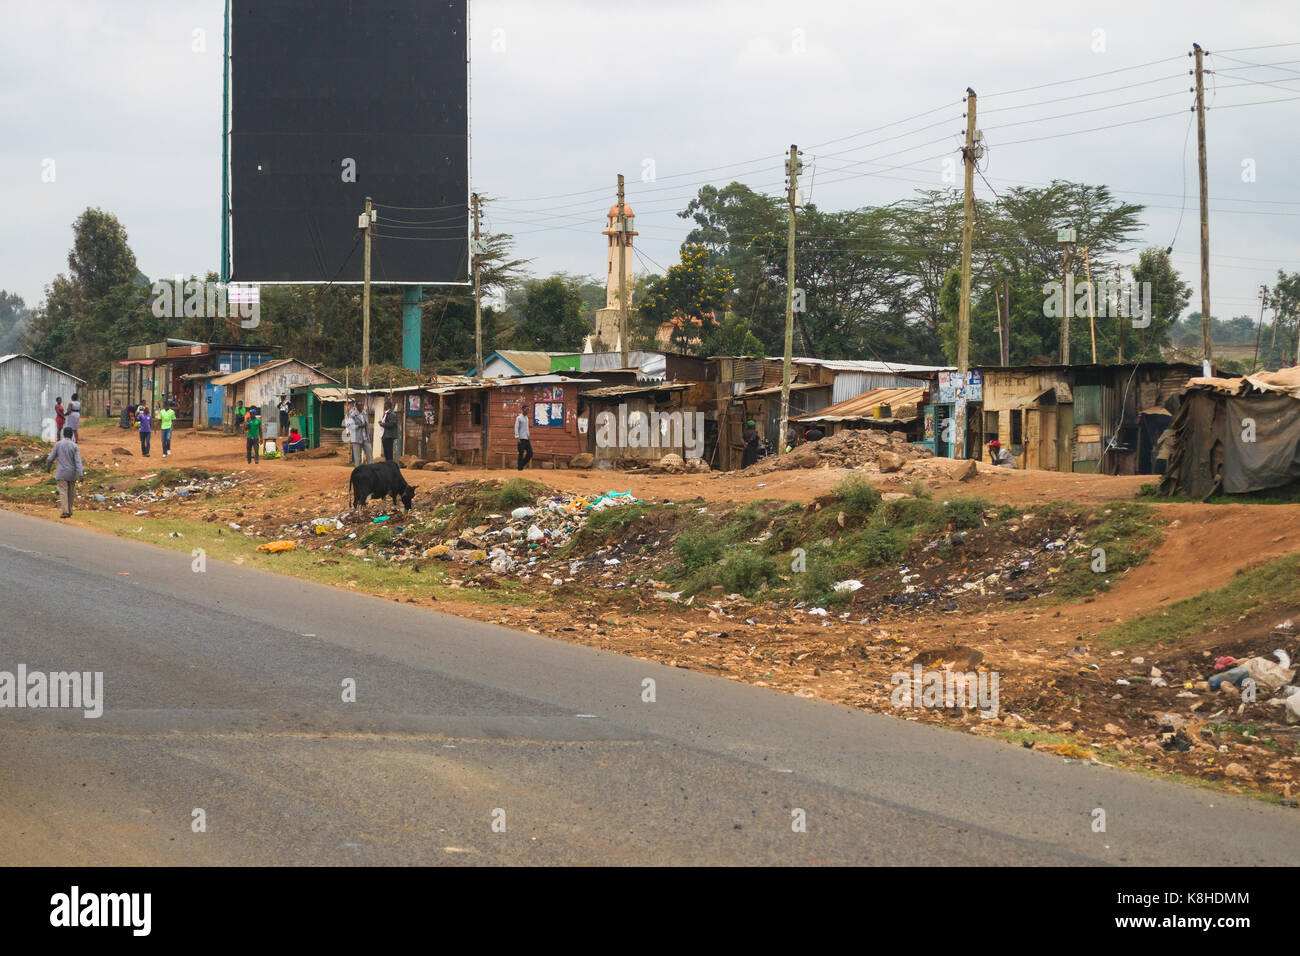 Buden mit Menschen und Kuh außerhalb, Abfall Abfall Linien den Boden, Kenia Stockfoto